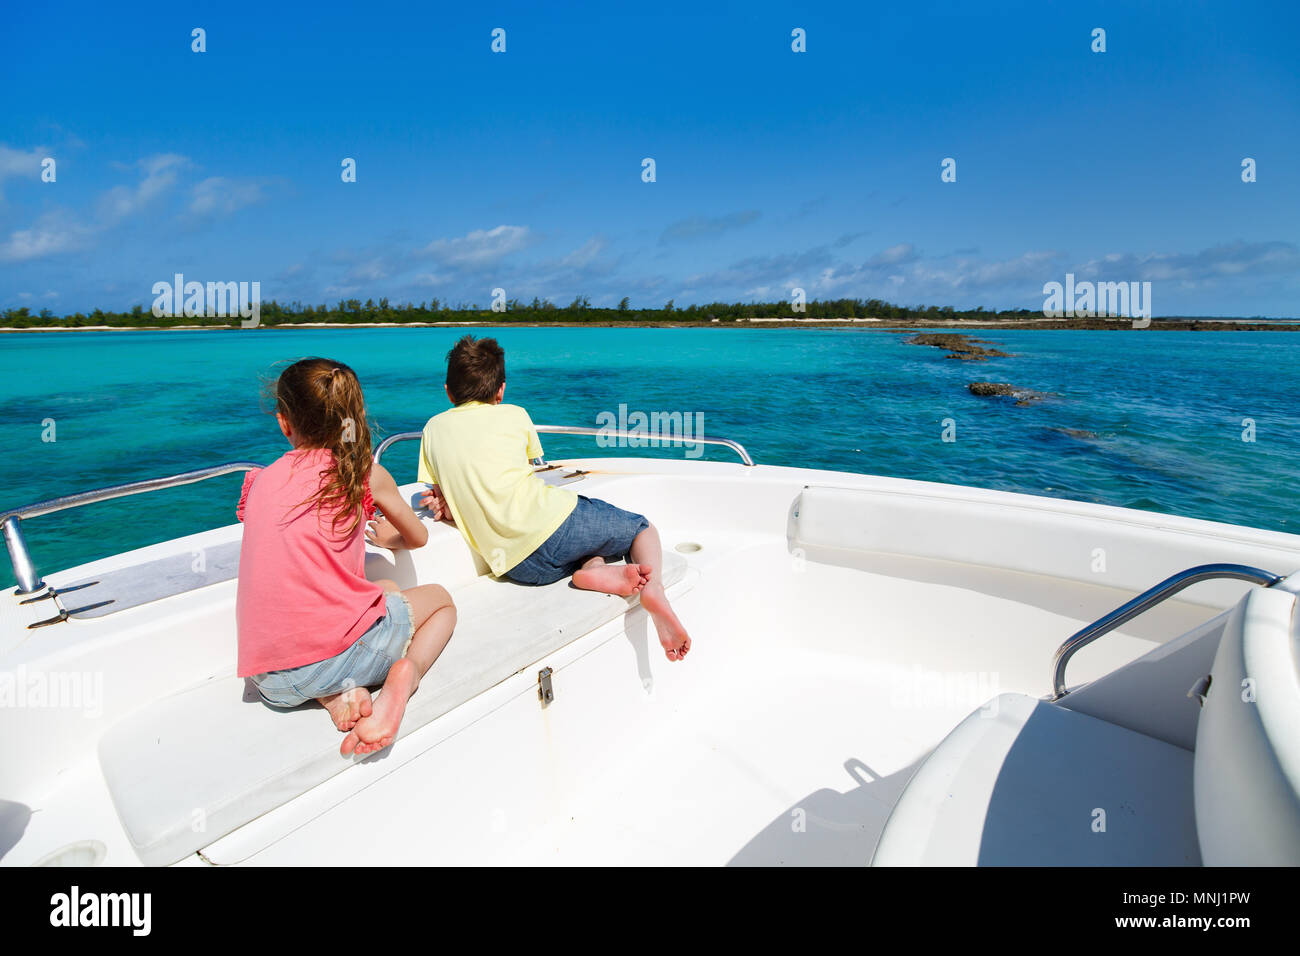 Bambini Un ragazzo e una ragazza godendo le vacanze con barca privata tour Foto Stock